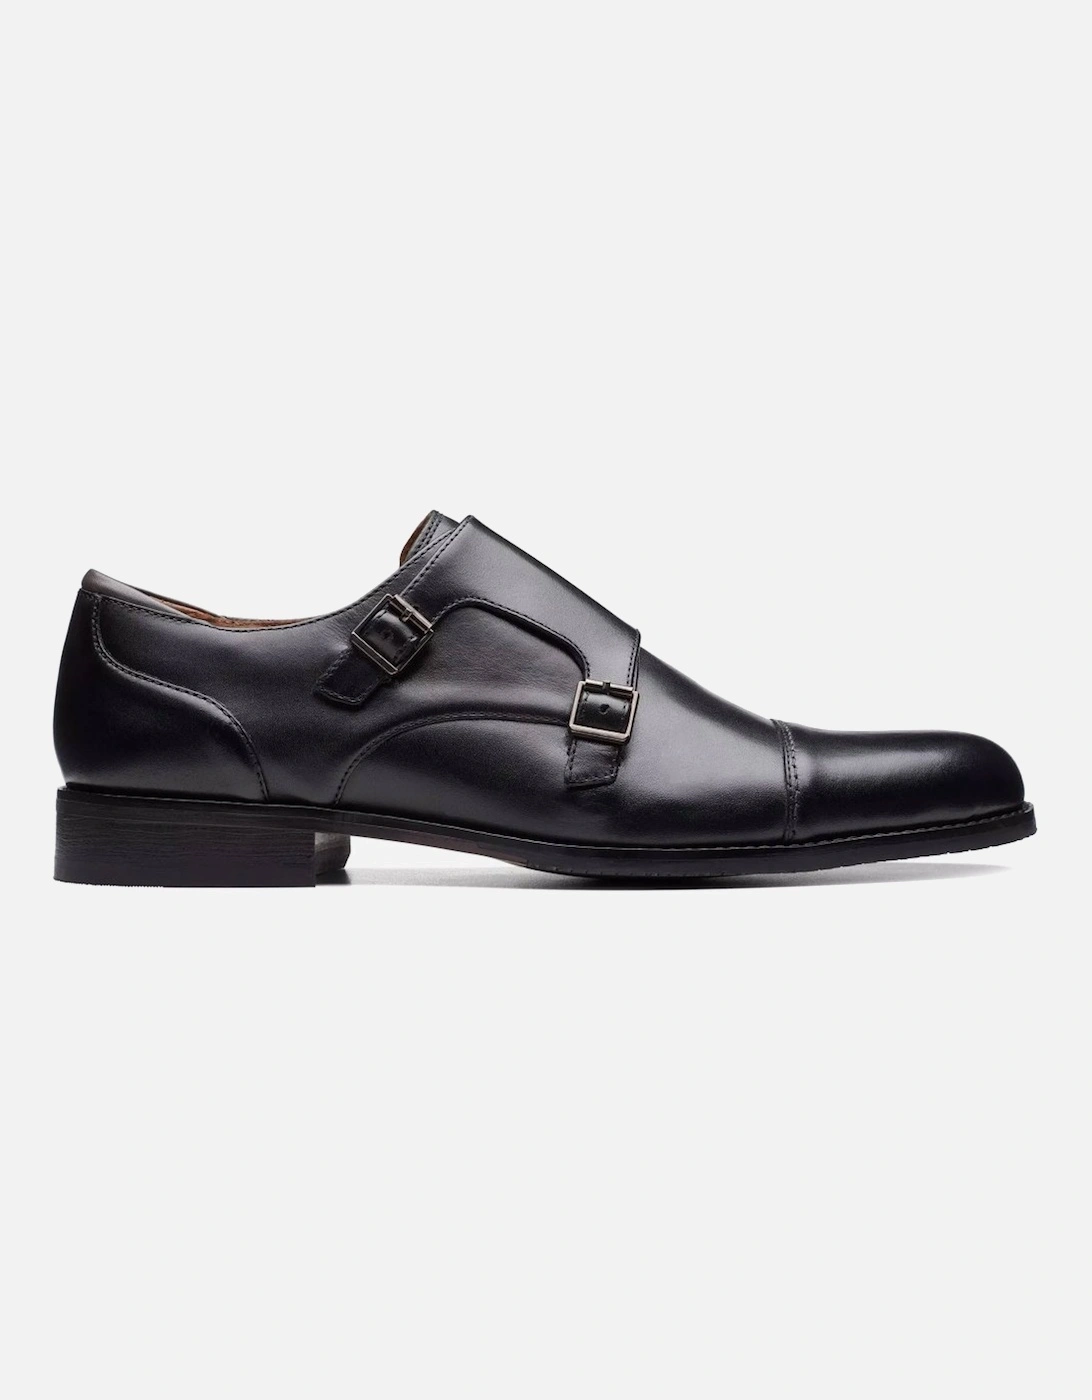 Craftarlo Monk Mens Formal Shoes